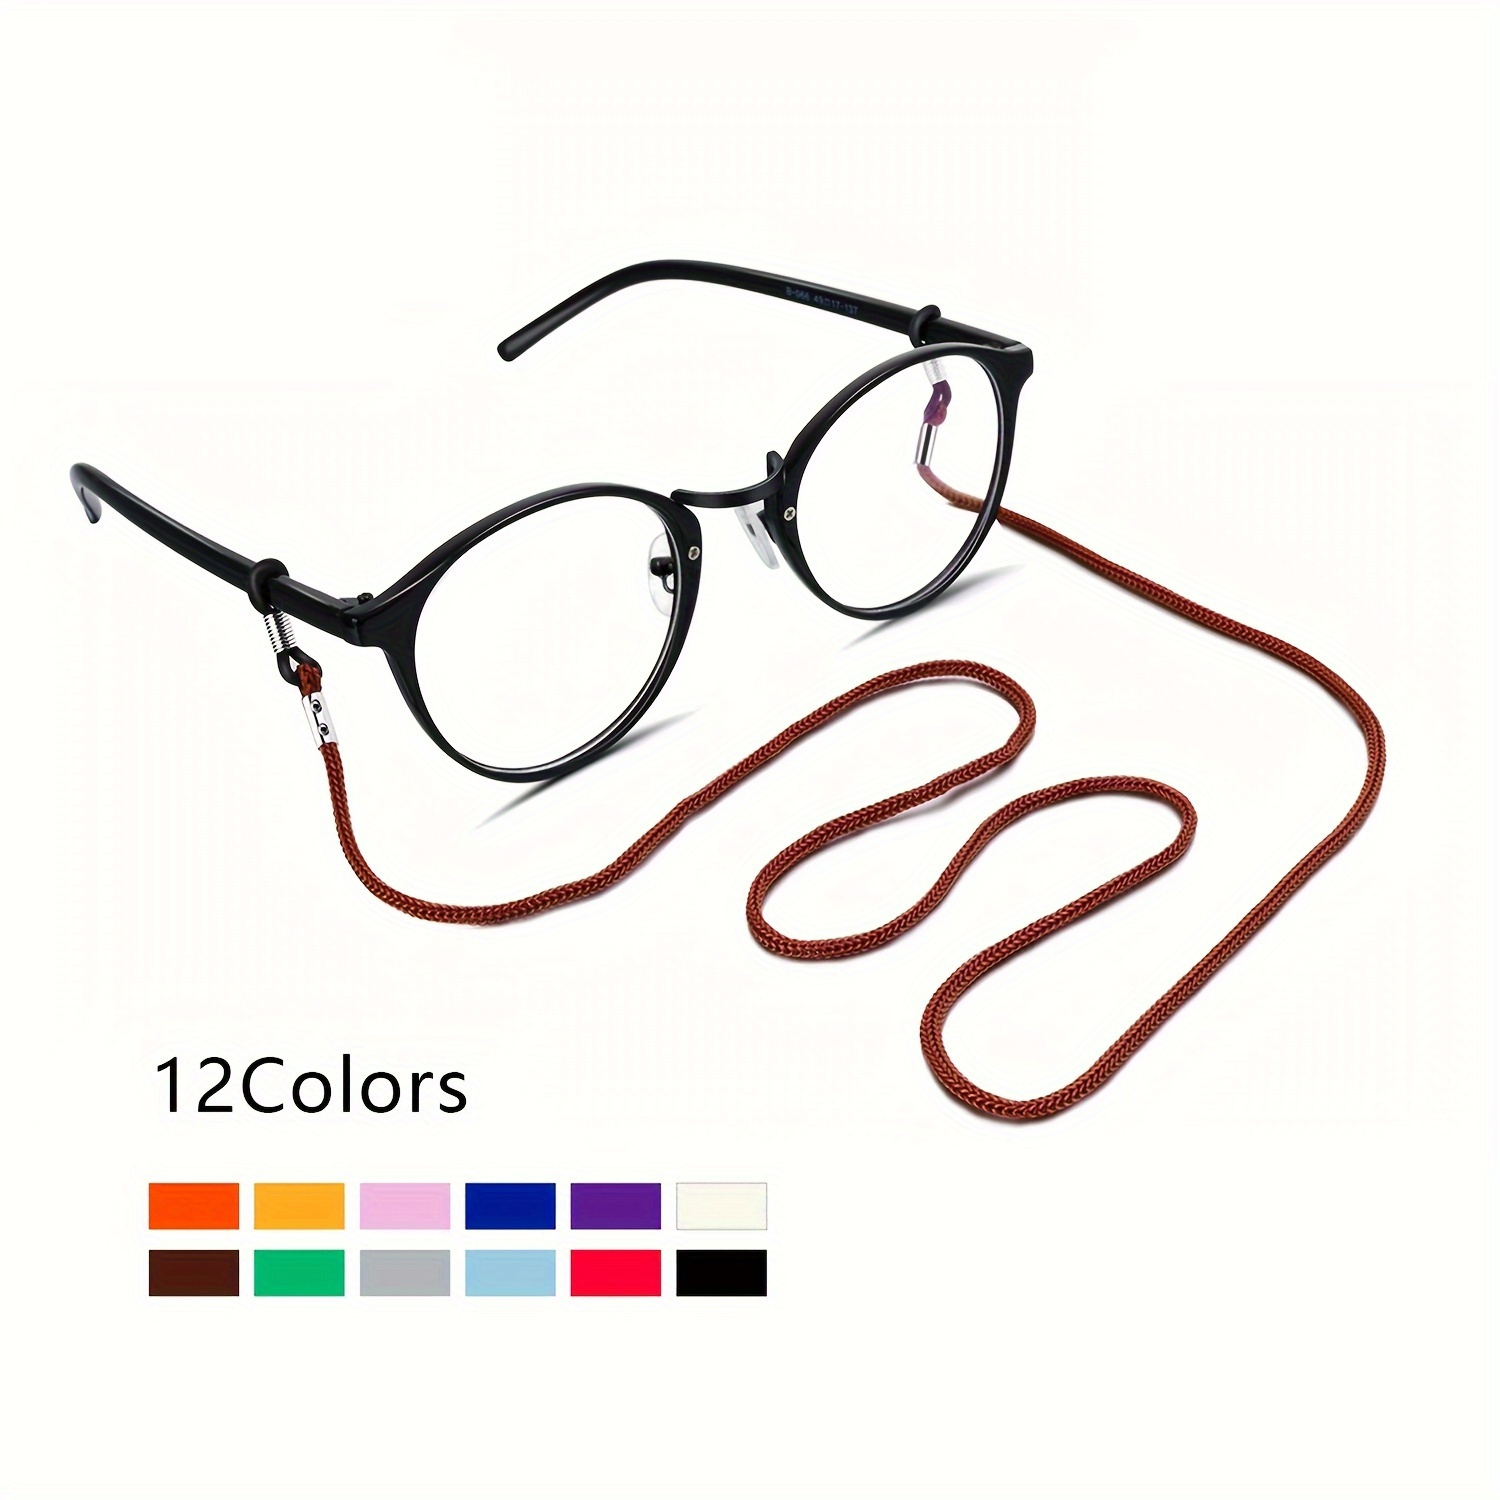 

1pc Nylon Glasses Strap Holder Anti Slip Glasses Cord String, Adjustable Sunglasses Reading Glasses Chain Lanyard Retainer Women Men